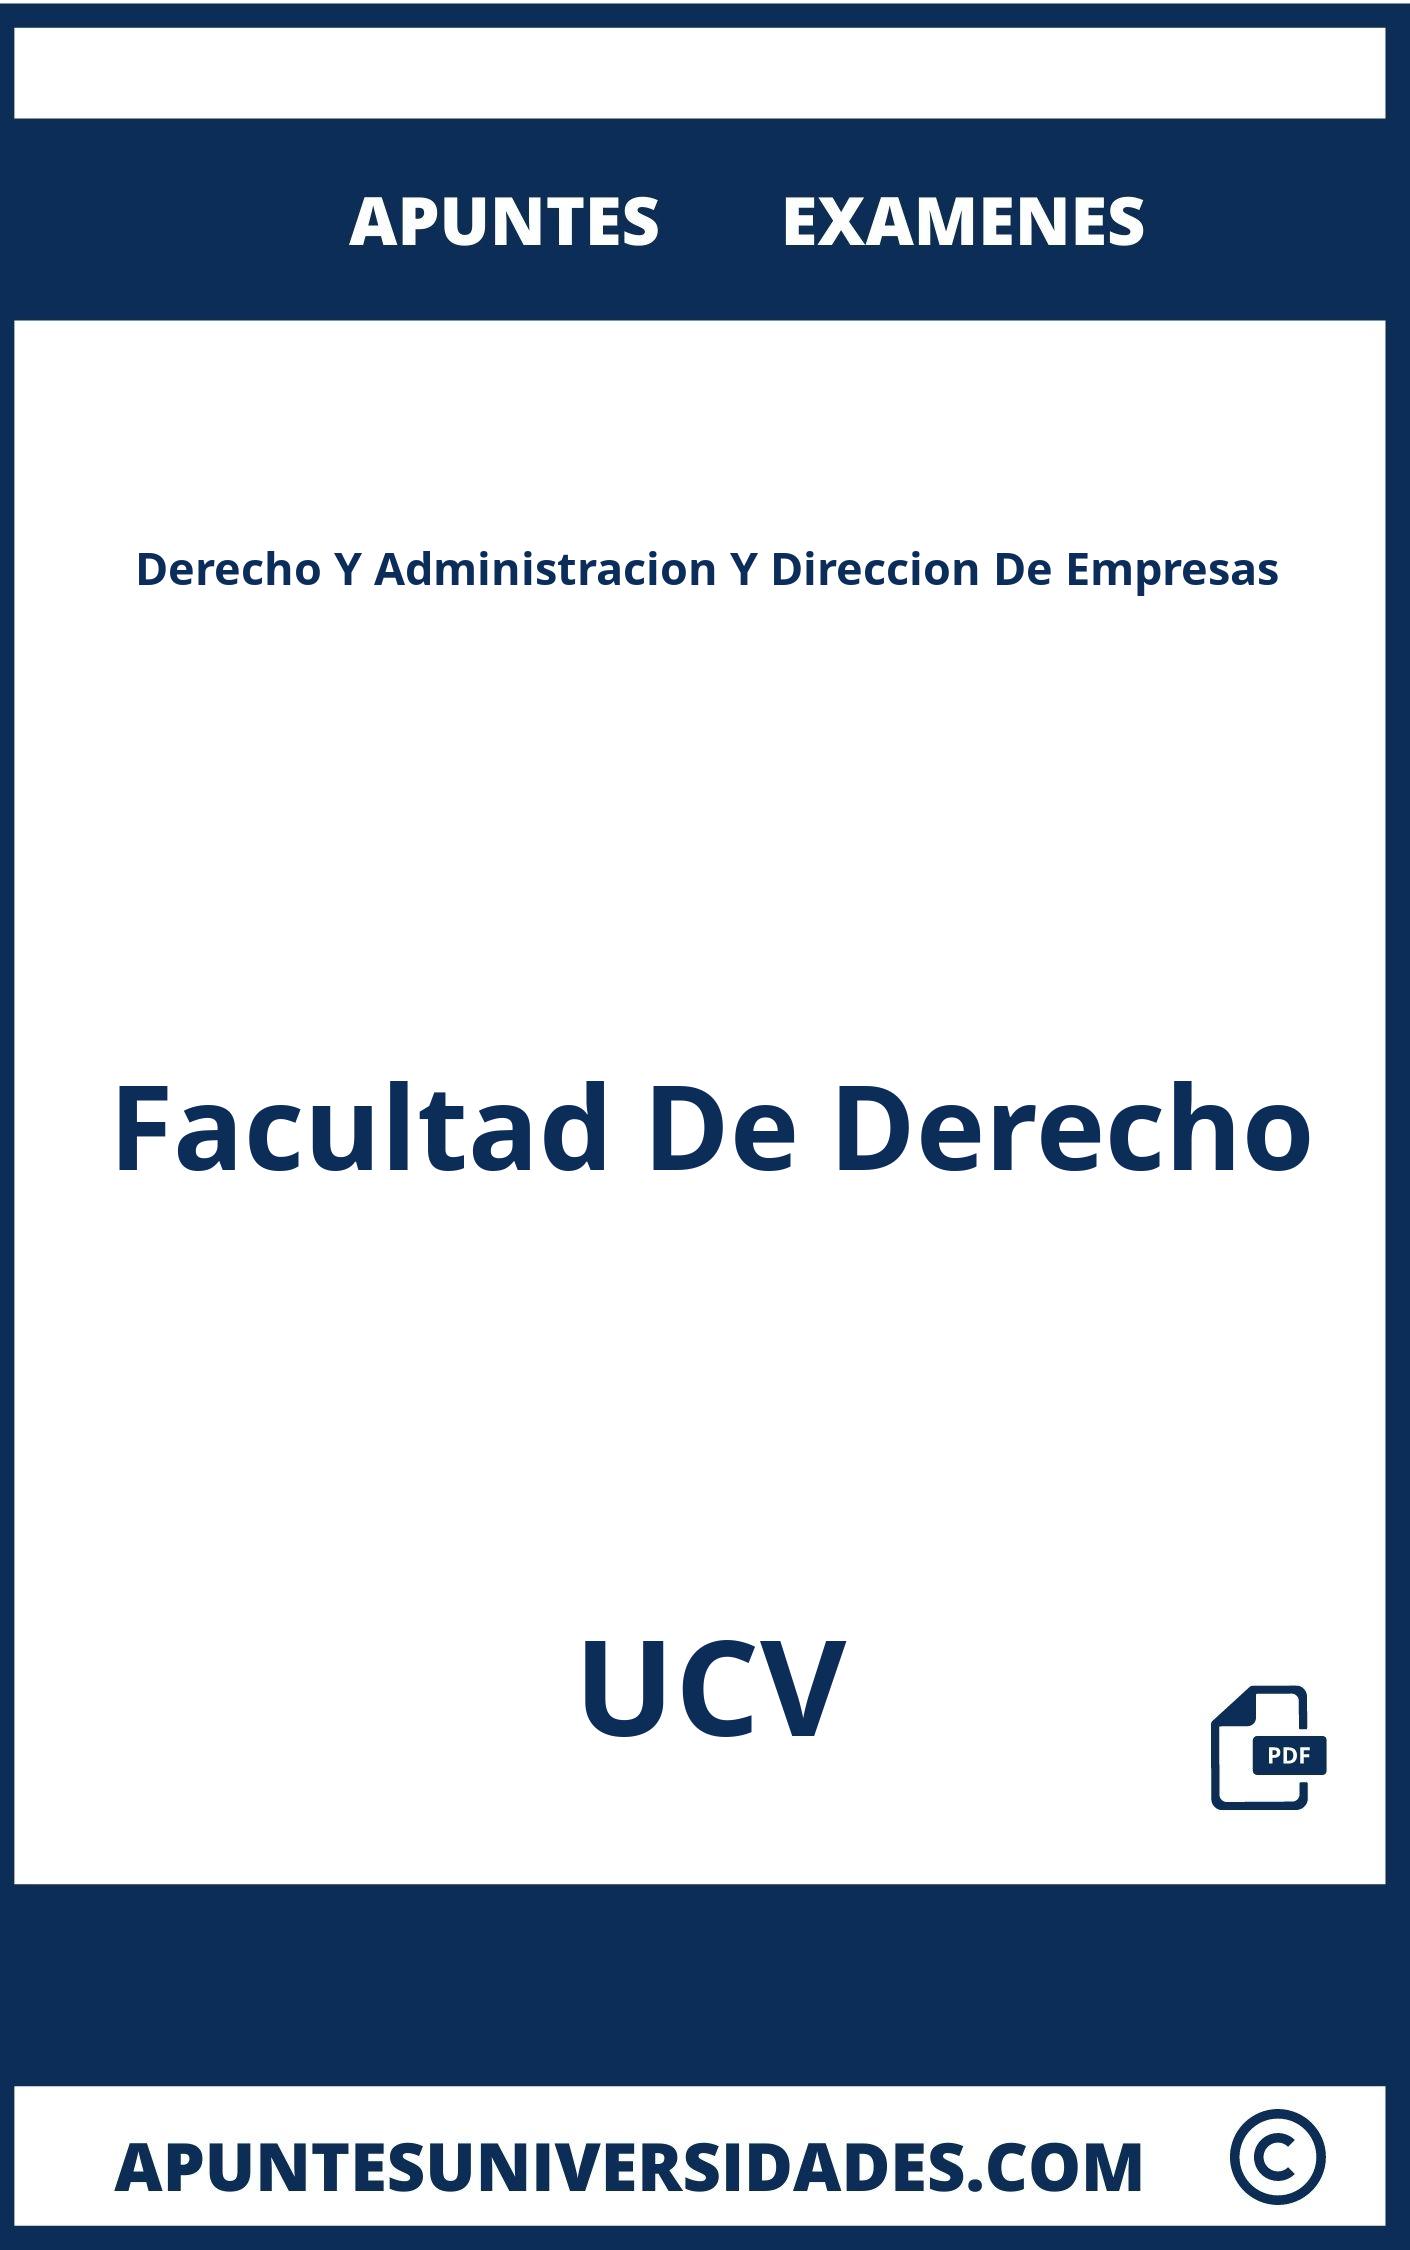 Derecho Y Administracion Y Direccion De Empresas UCV Examenes Apuntes